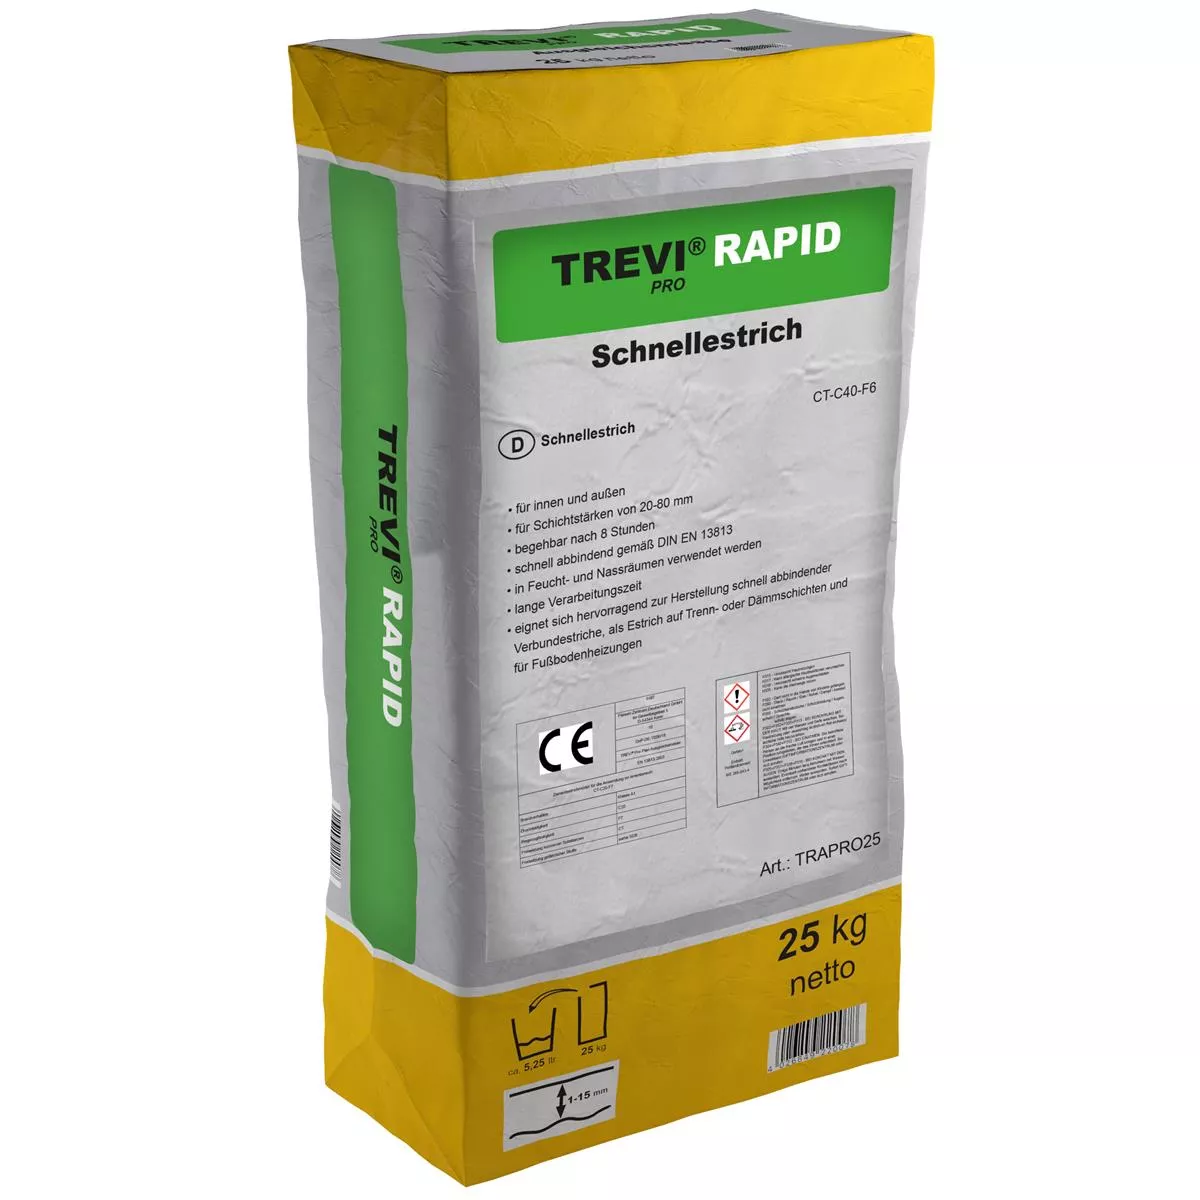 Trevi Pro Rapid snel uithardende cementdekvloer (25KG)